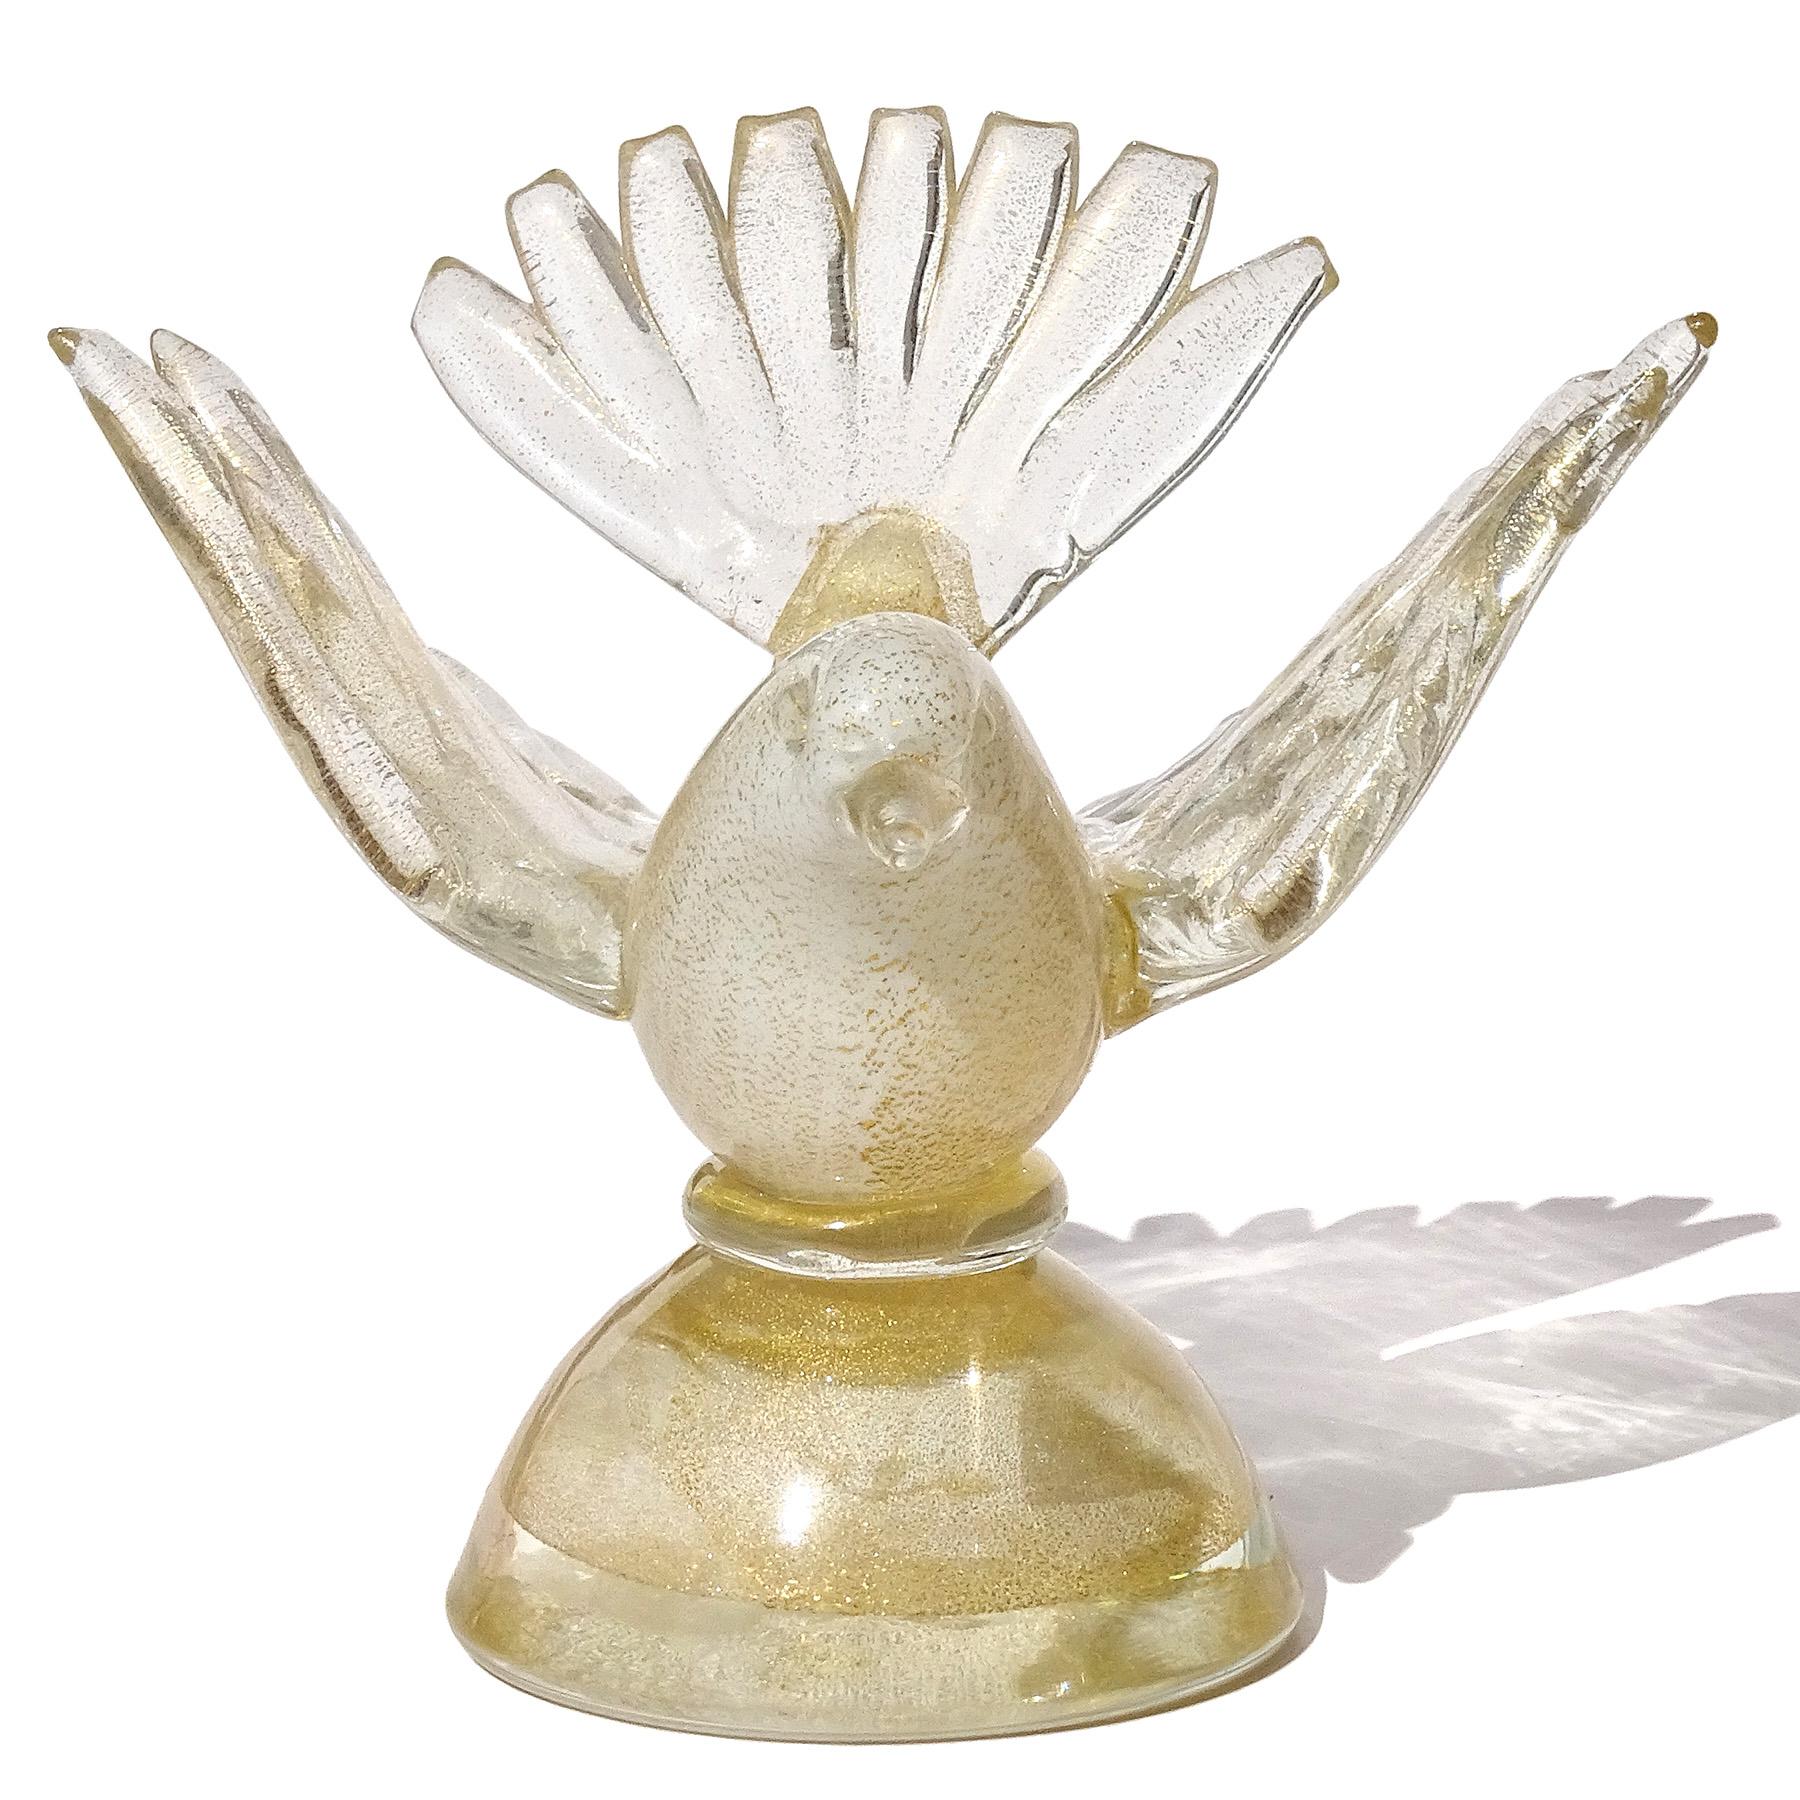 Magnifique figurine d'oiseau sur socle en verre d'art italien soufflé à la main à Murano, blanc et mouchetures d'or, presse-papier. Documenté au designer Alfredo Barbini, vers les années 1950-60. J'en ai possédé d'autres comme celui-ci avec les